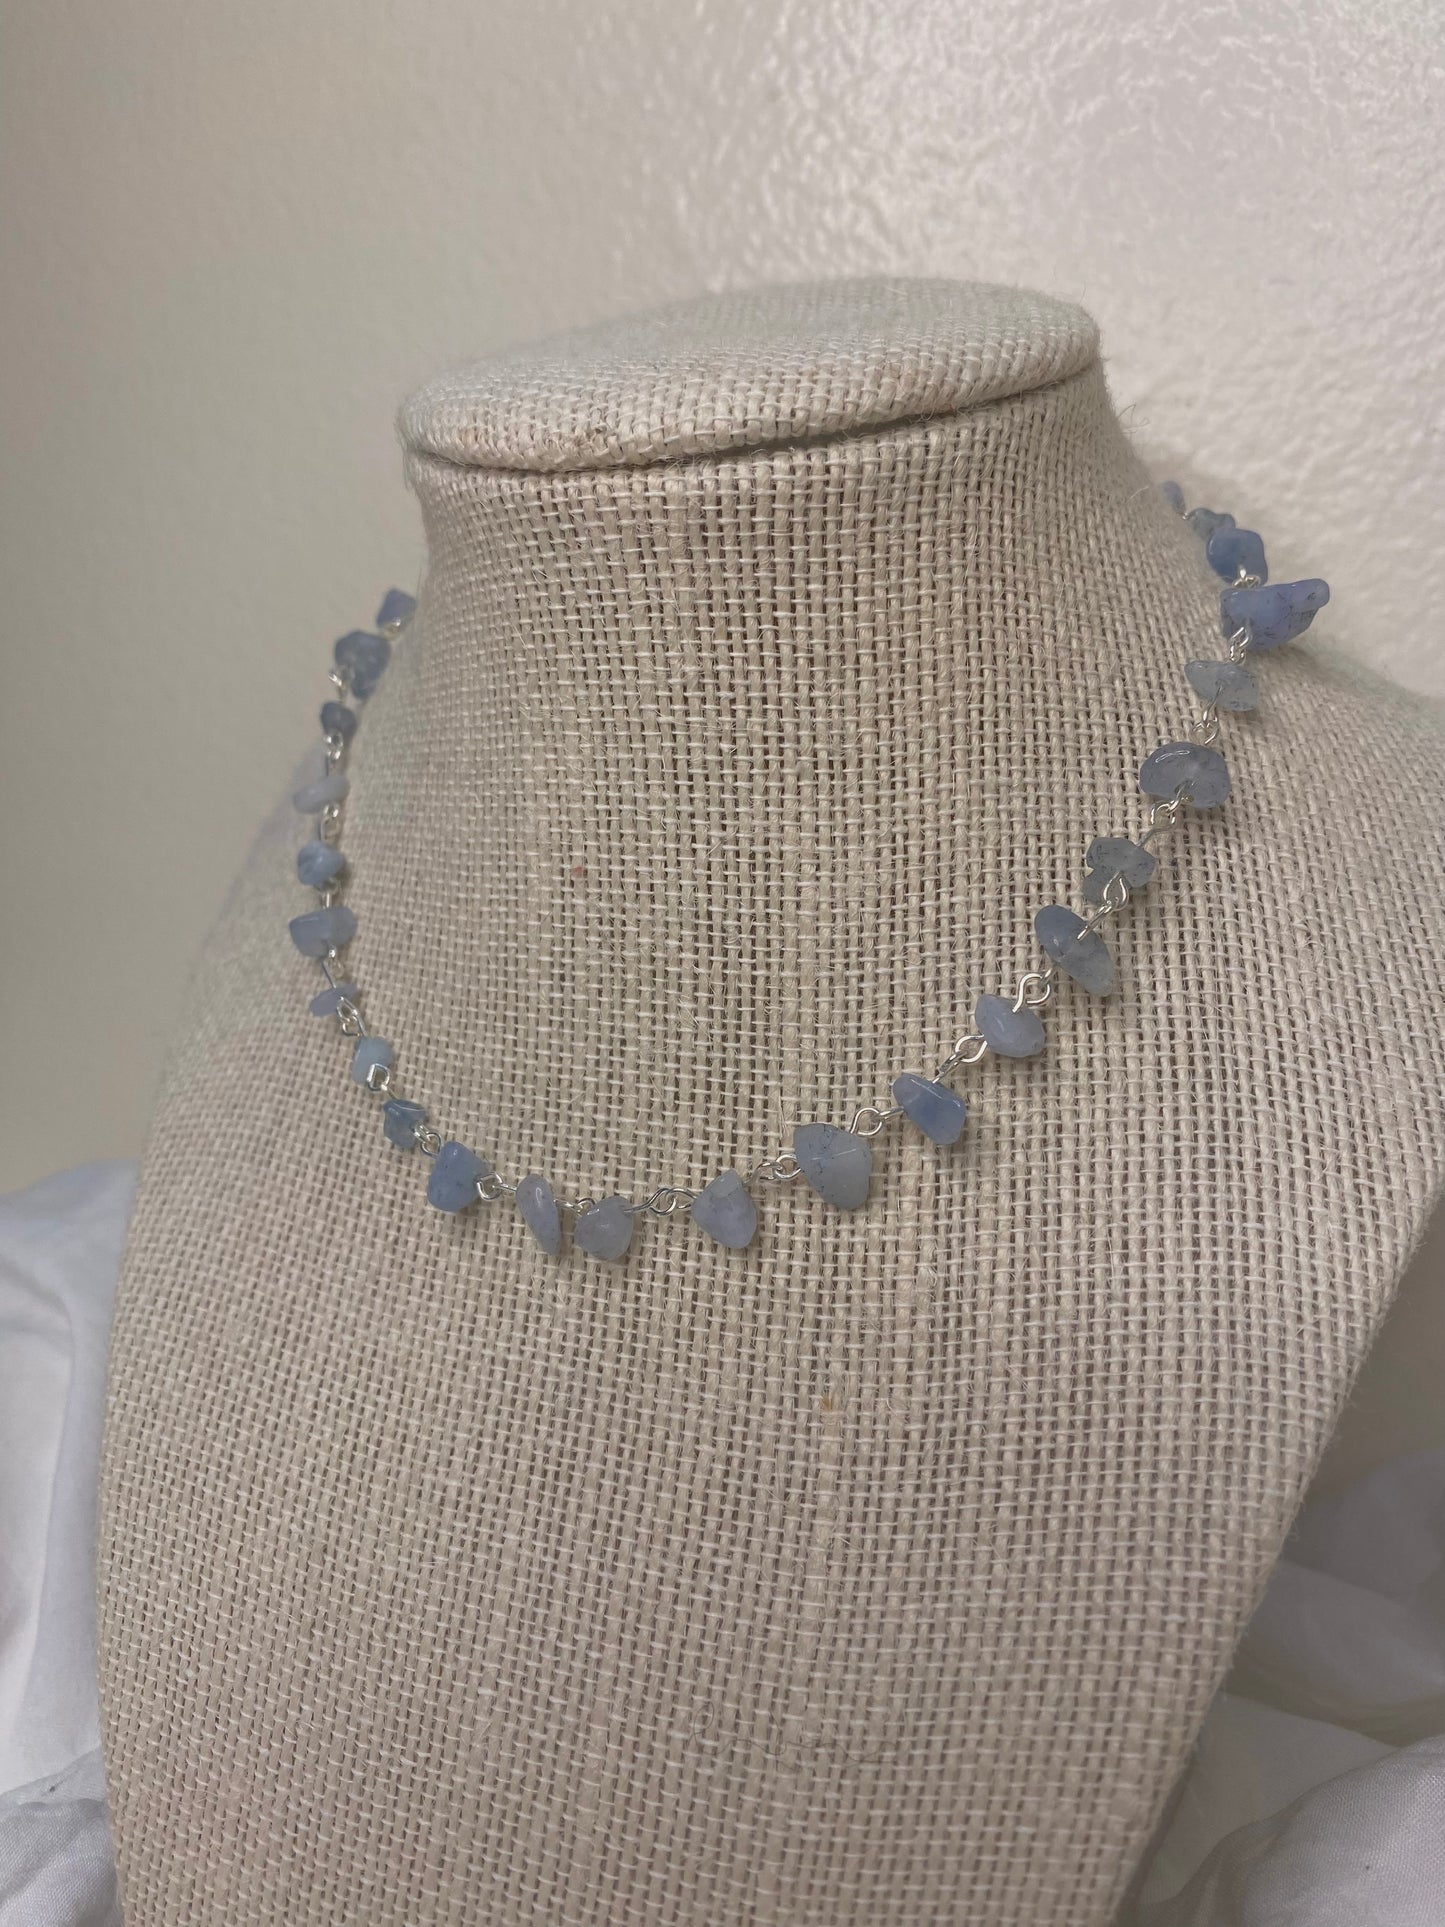 Aquamarine chip necklace